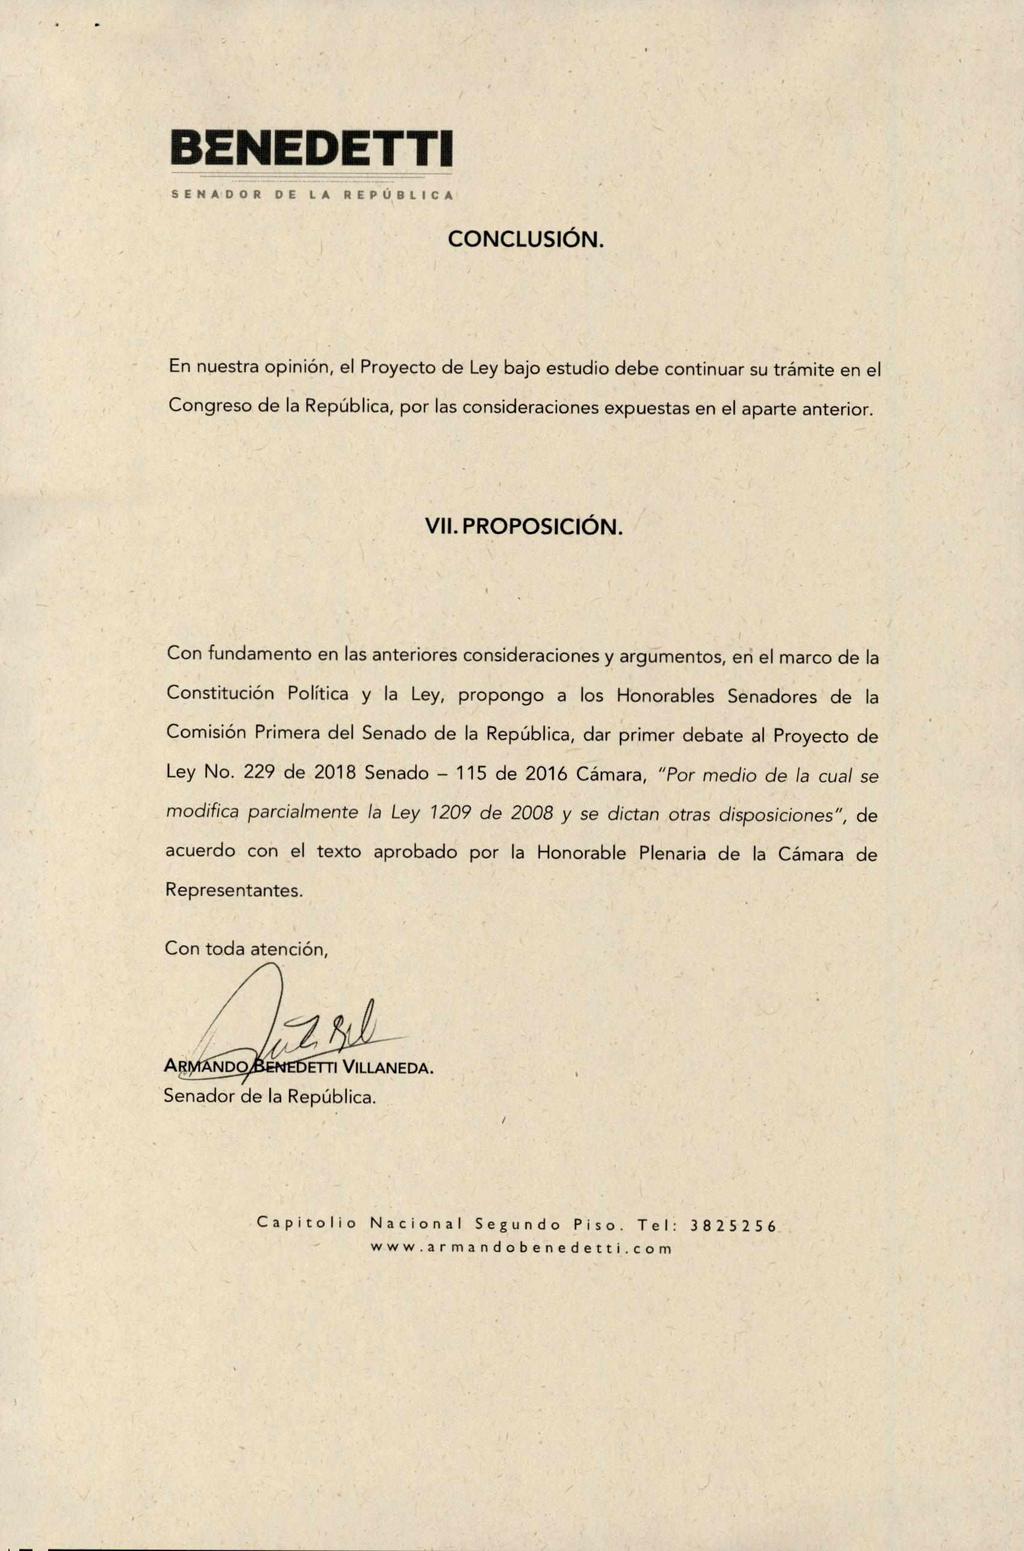 SENADOR DE LA REPUBLICA CONCLUSIÓN.